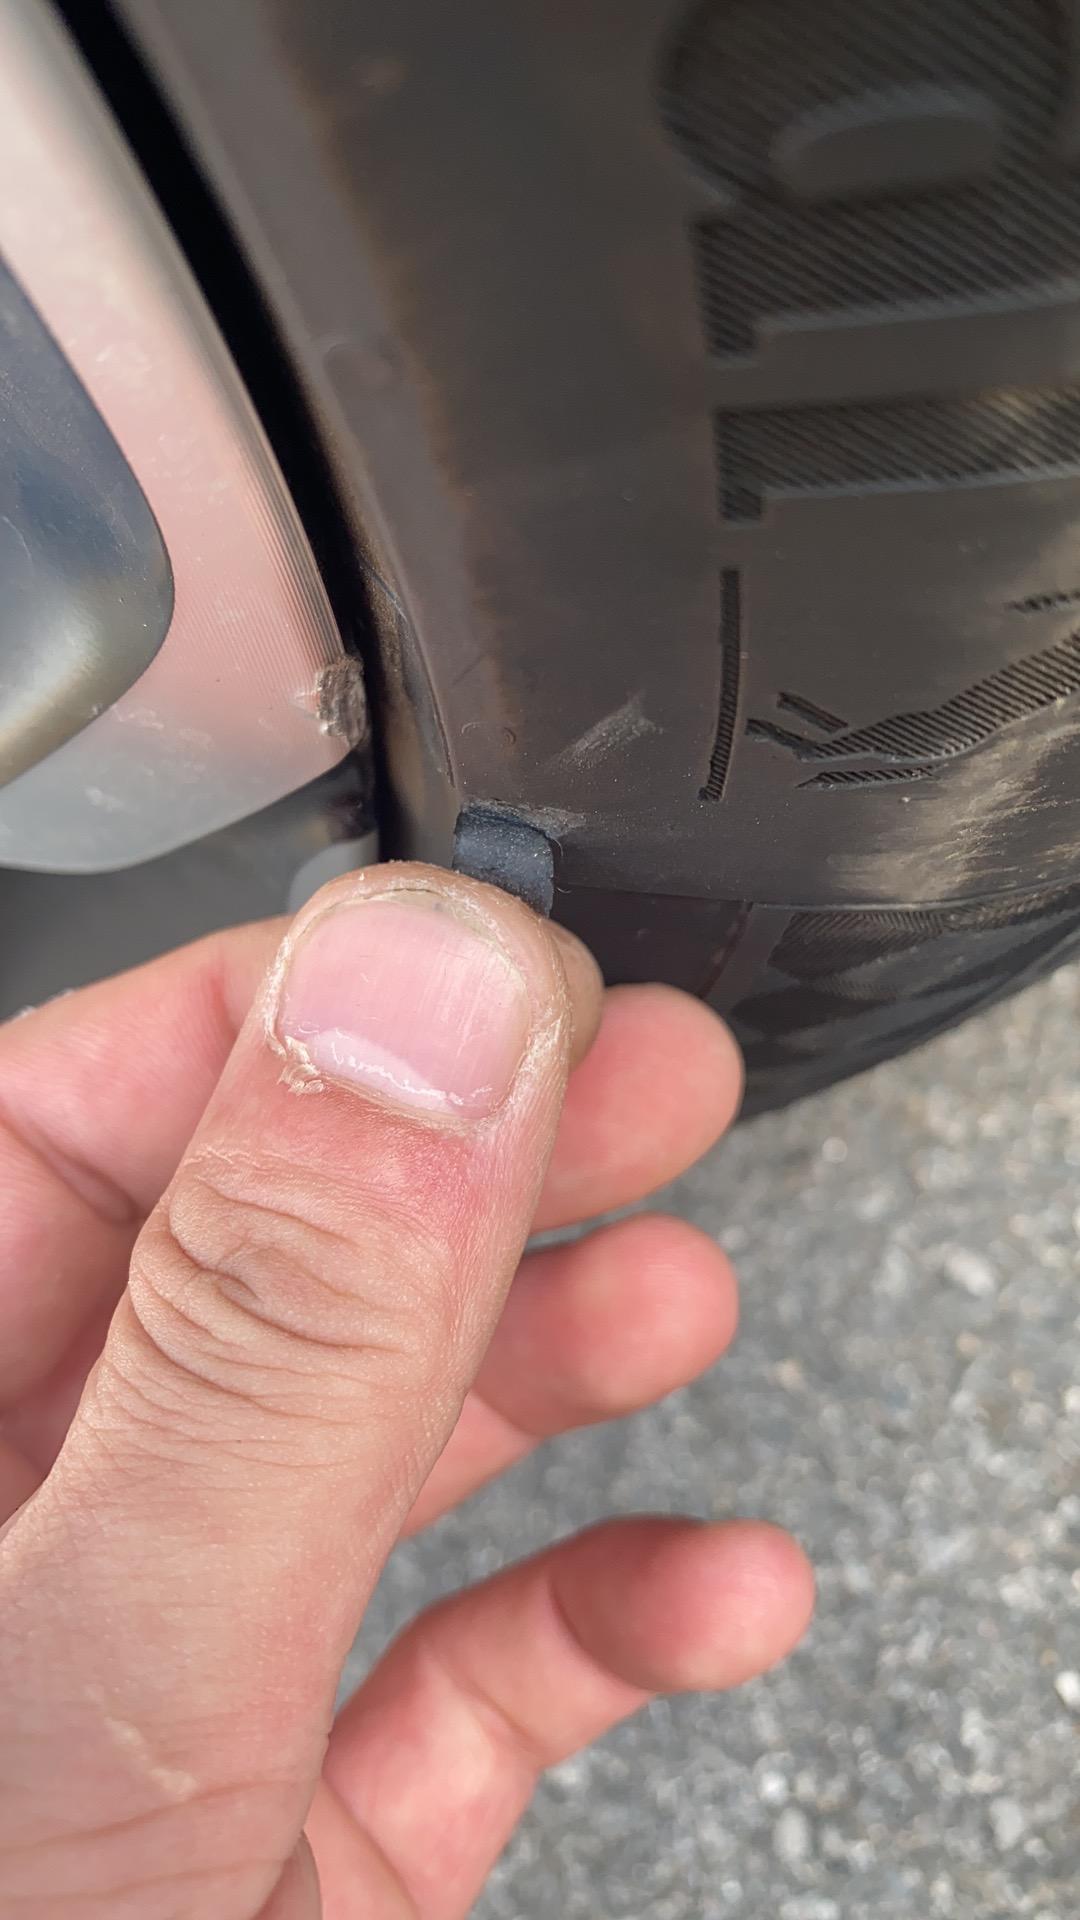 领克05 挤到了路边的马路牙子，就这样了，车友们这个问题我需要处理吗轮胎破了皮，轮毂有一点磨损